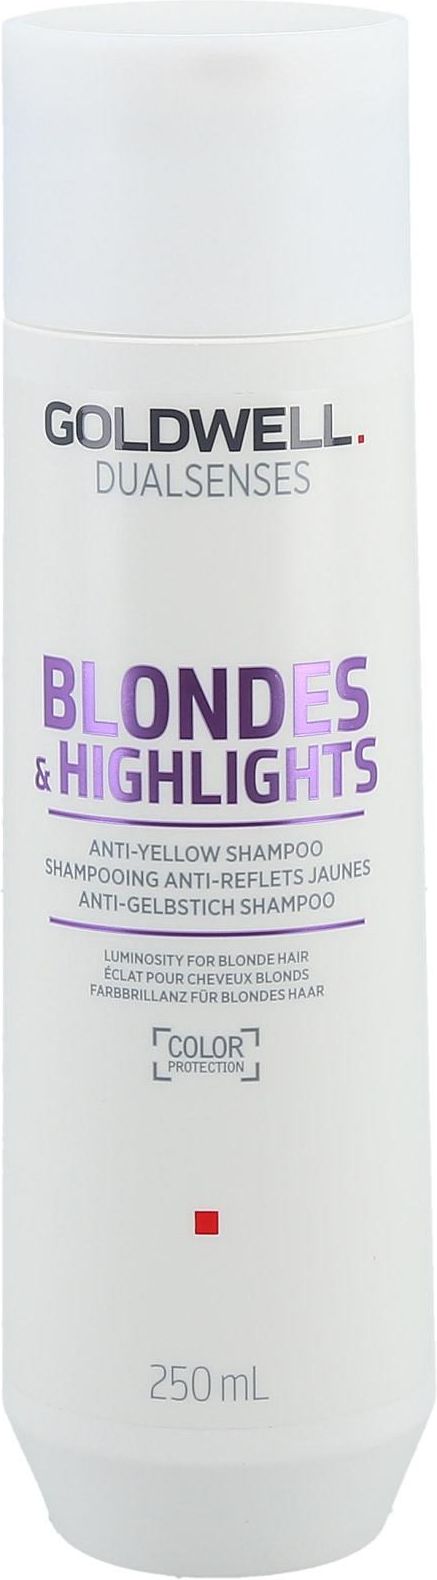 szampon do włosów goldwell brillianc opinie